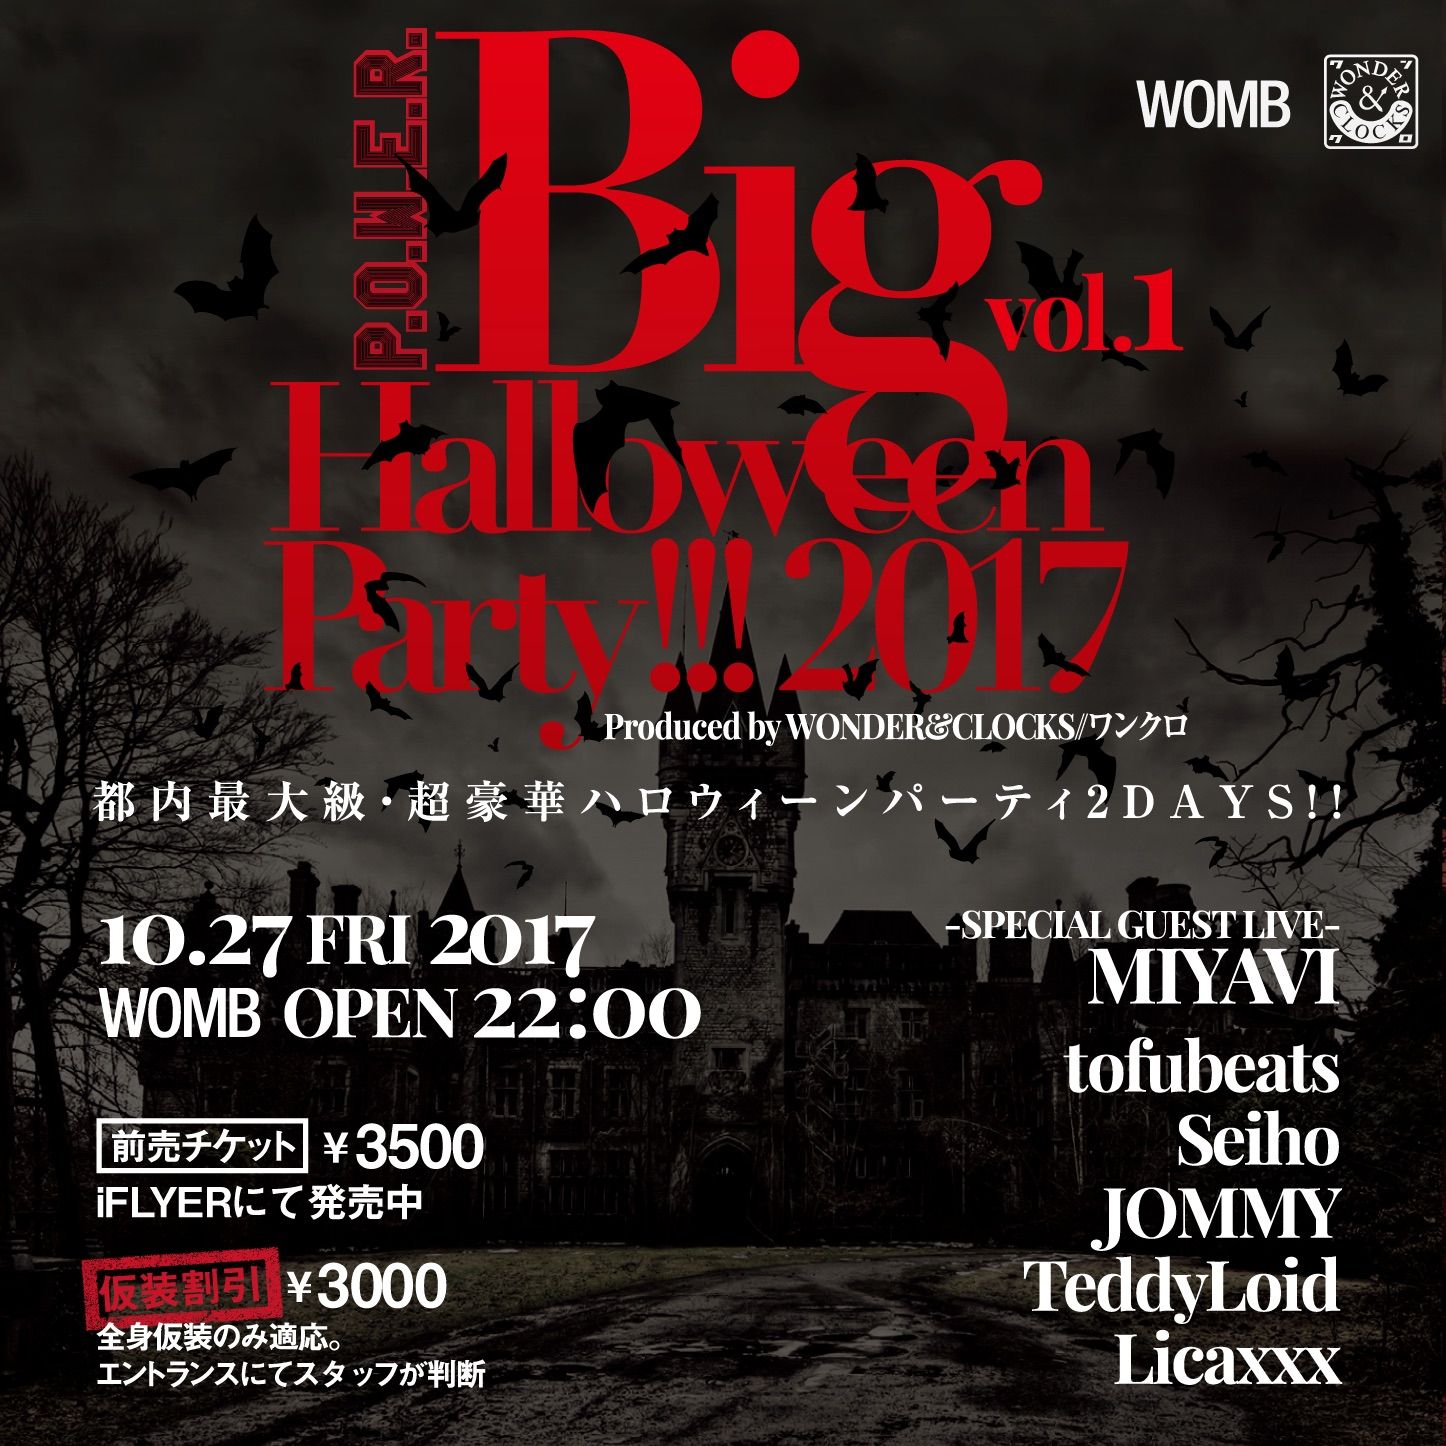 P.O.W.E.R. BIG HALLOWEEN PARTY 2017 vol.1 Produced by WONDER&CLOCKS//ワンクロ